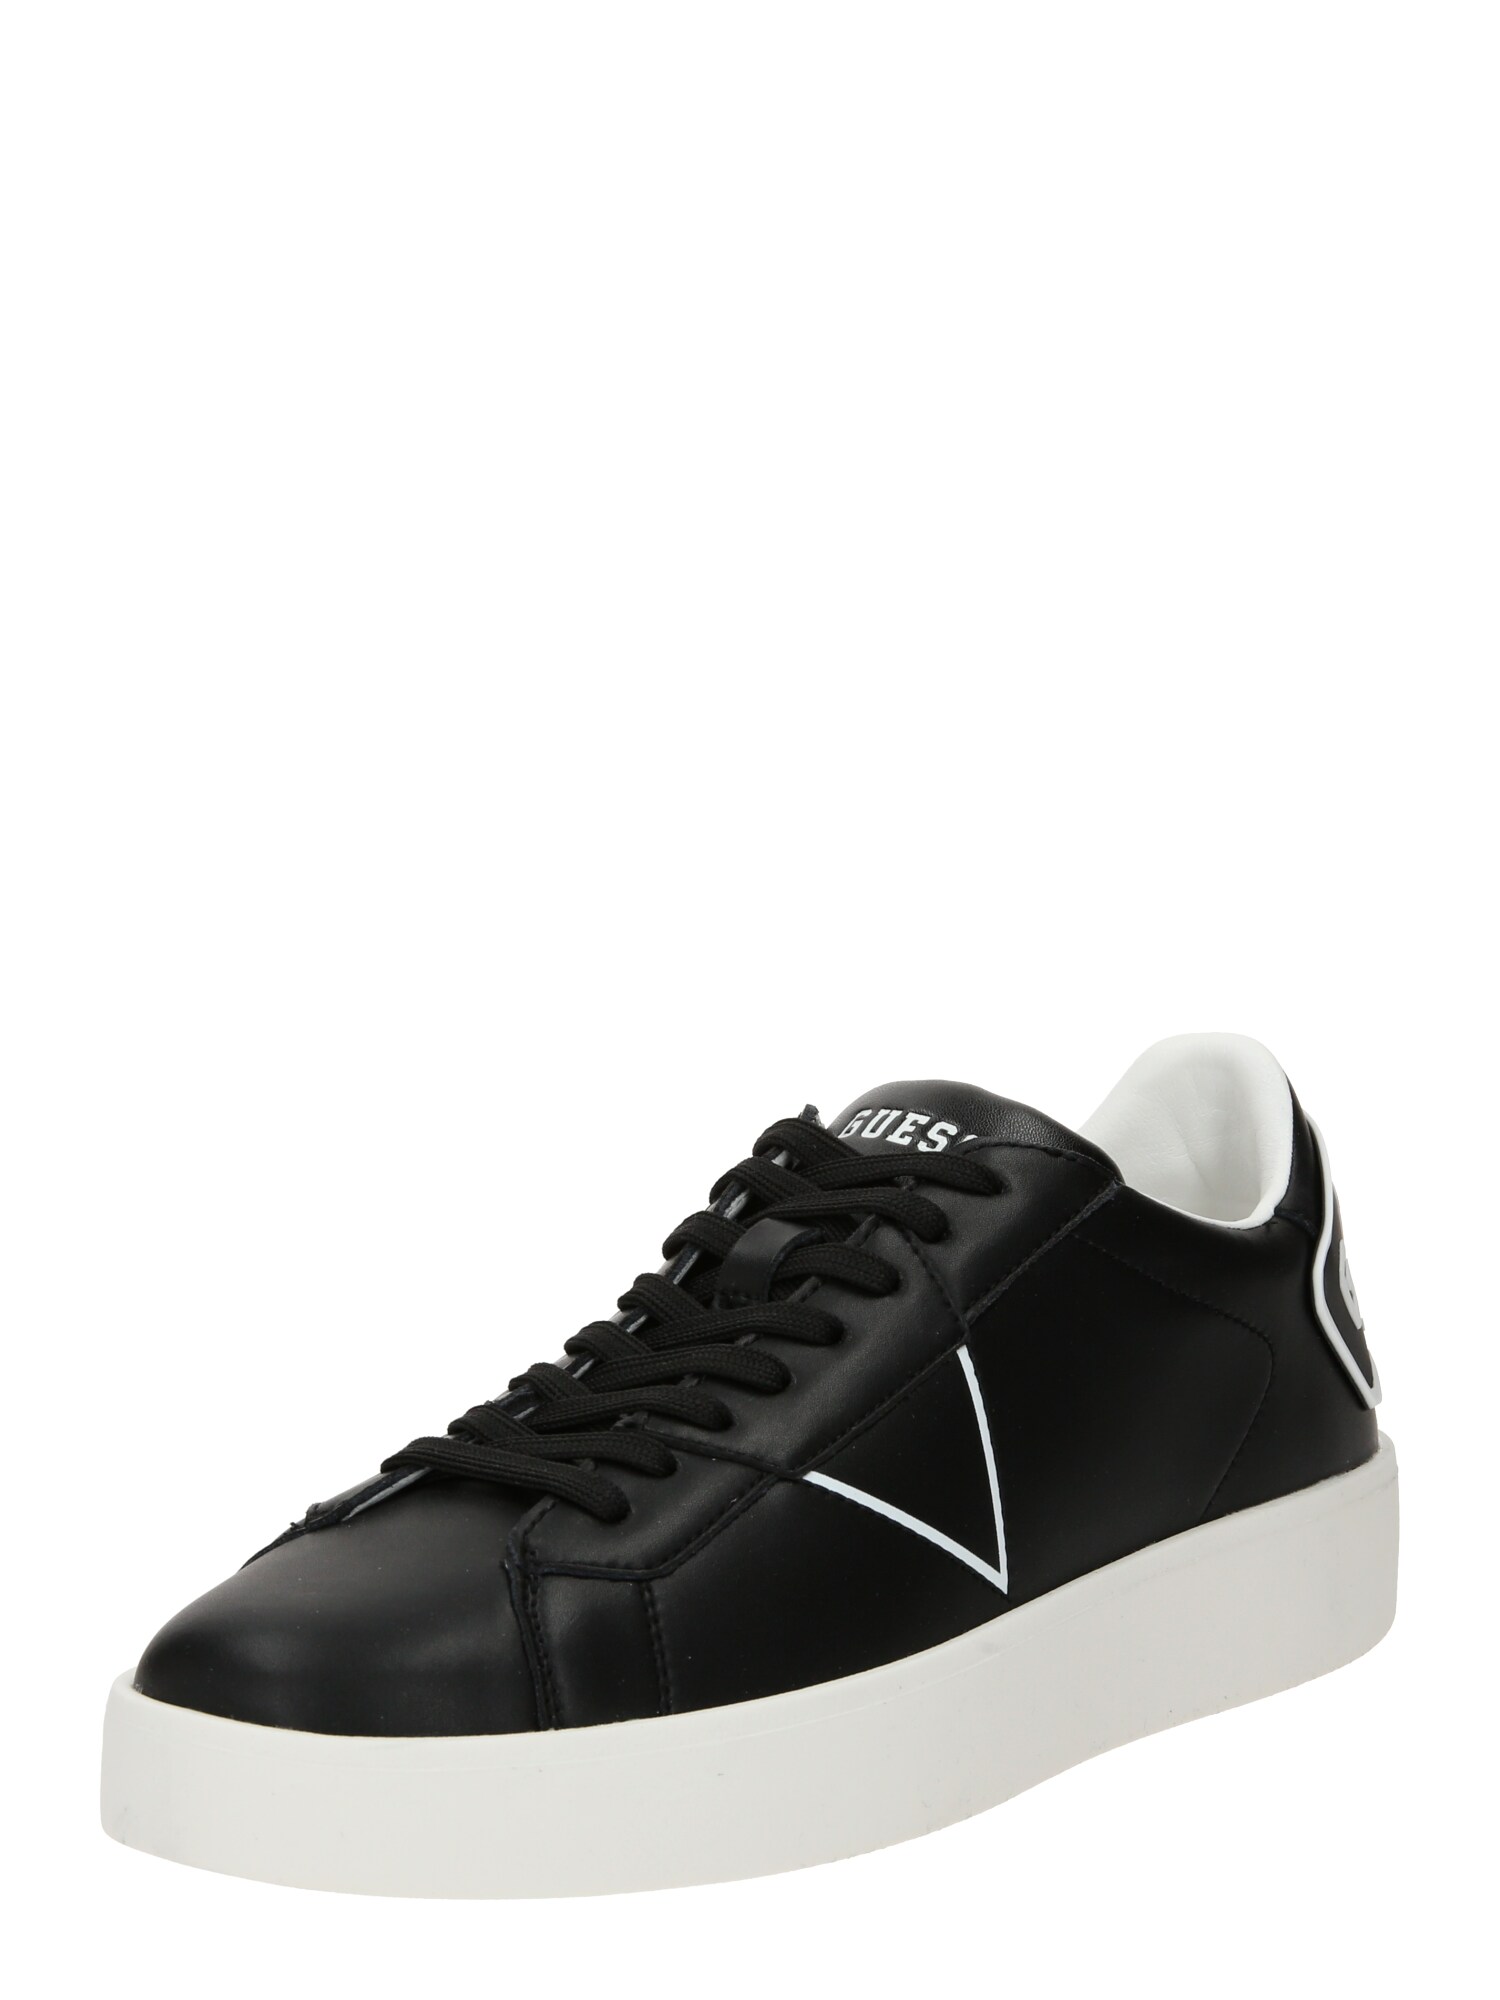 GUESS Sneaker low 'PARMA'  negru / alb murdar